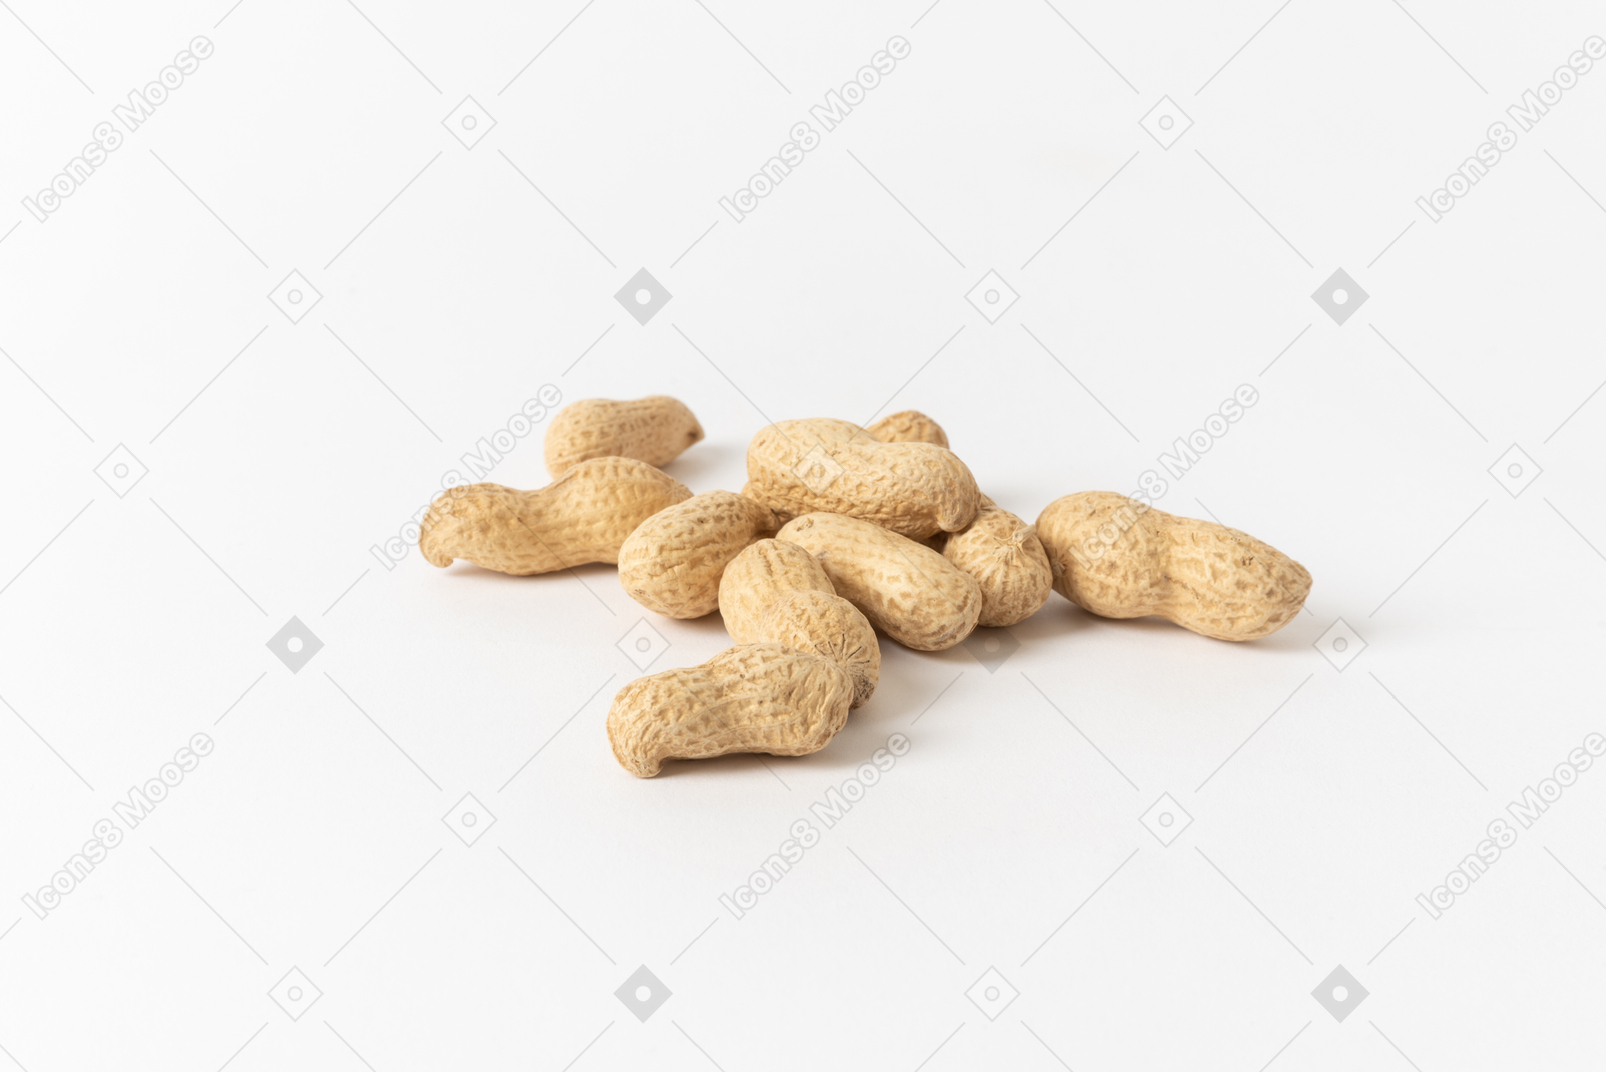 Le arachidi tostate e salate sono uno snack classico